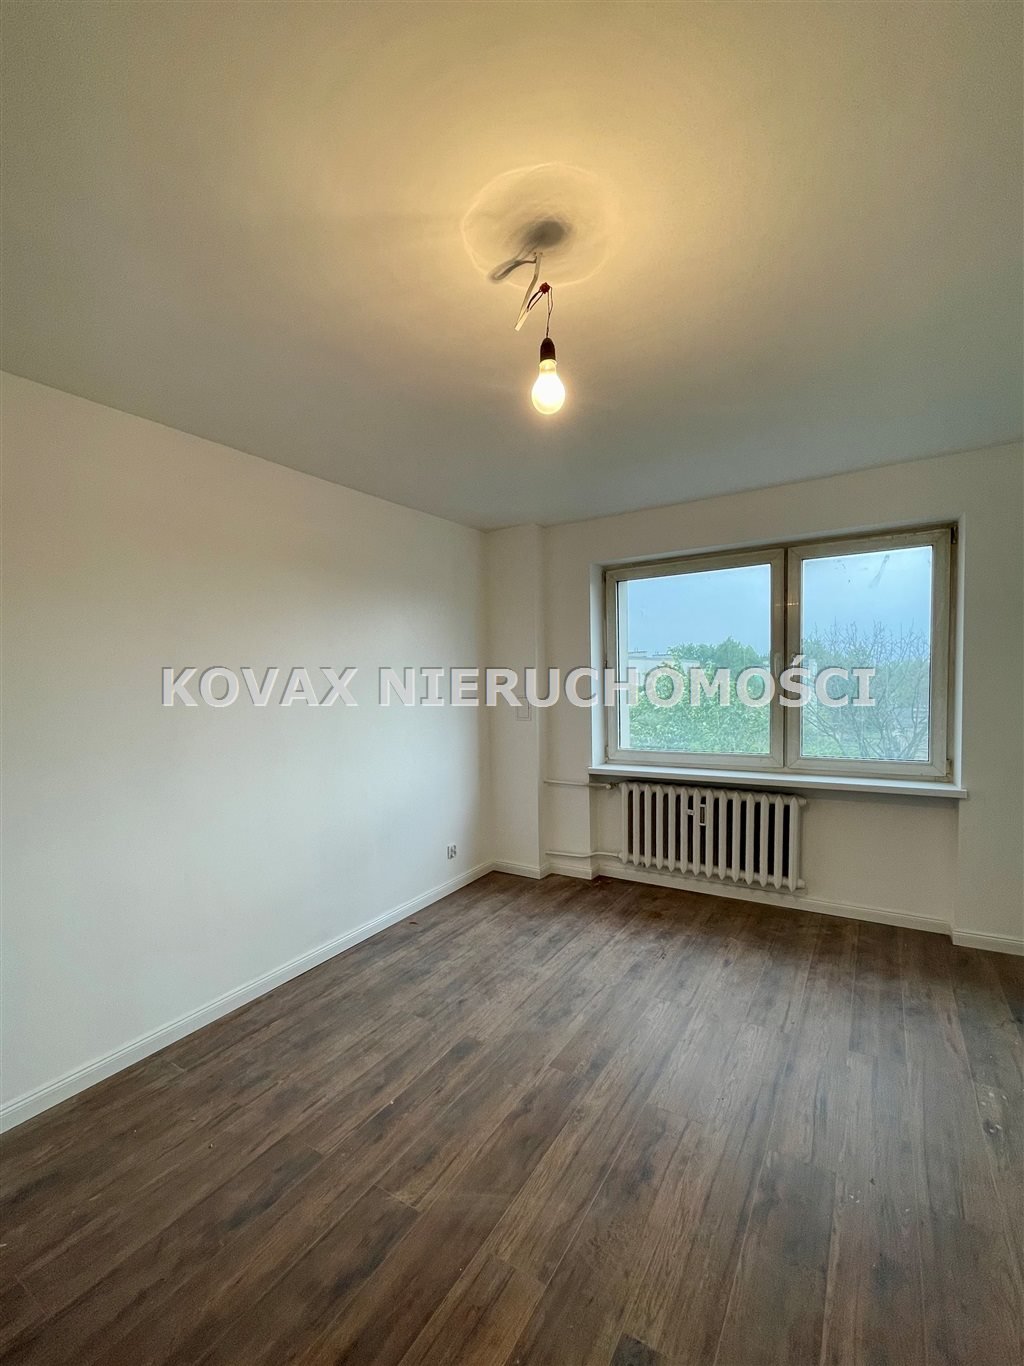 Mieszkanie trzypokojowe na sprzedaż Sosnowiec, Niwka, Biała Przemsza  43m2 Foto 3